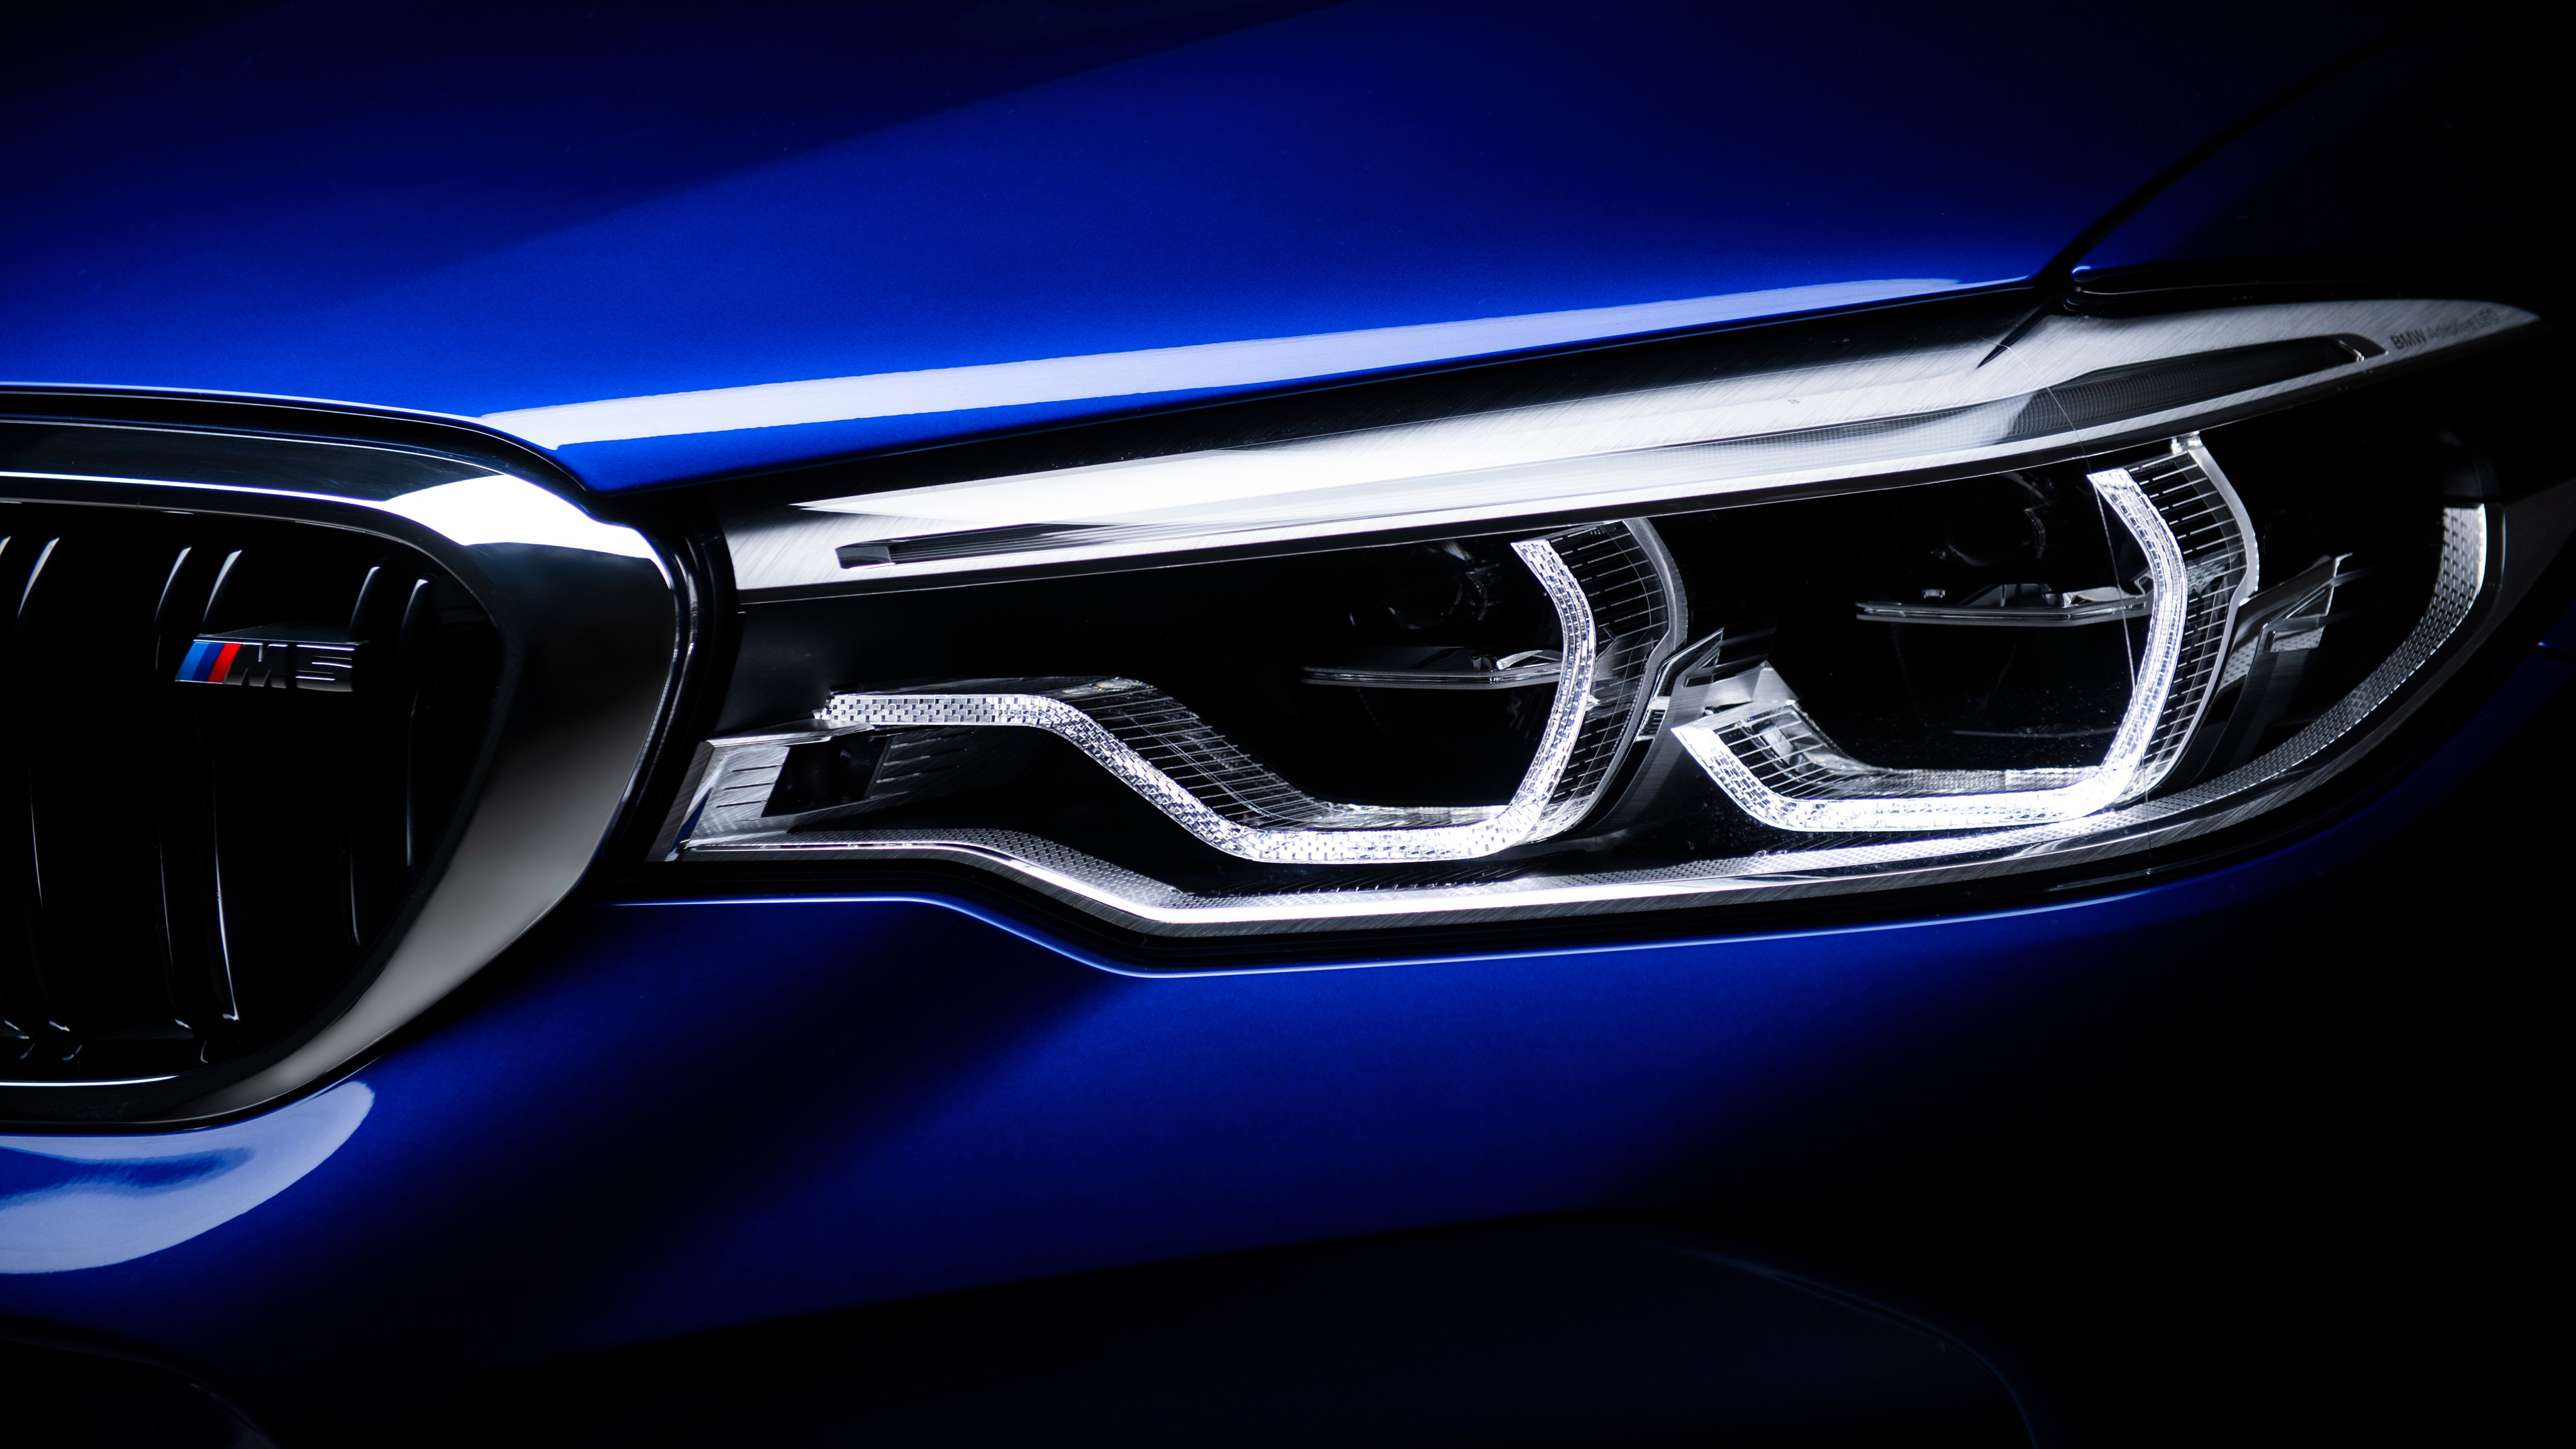 BMW M5 Headlights Wallpaper | HD Car Wallpapers | ID #10628